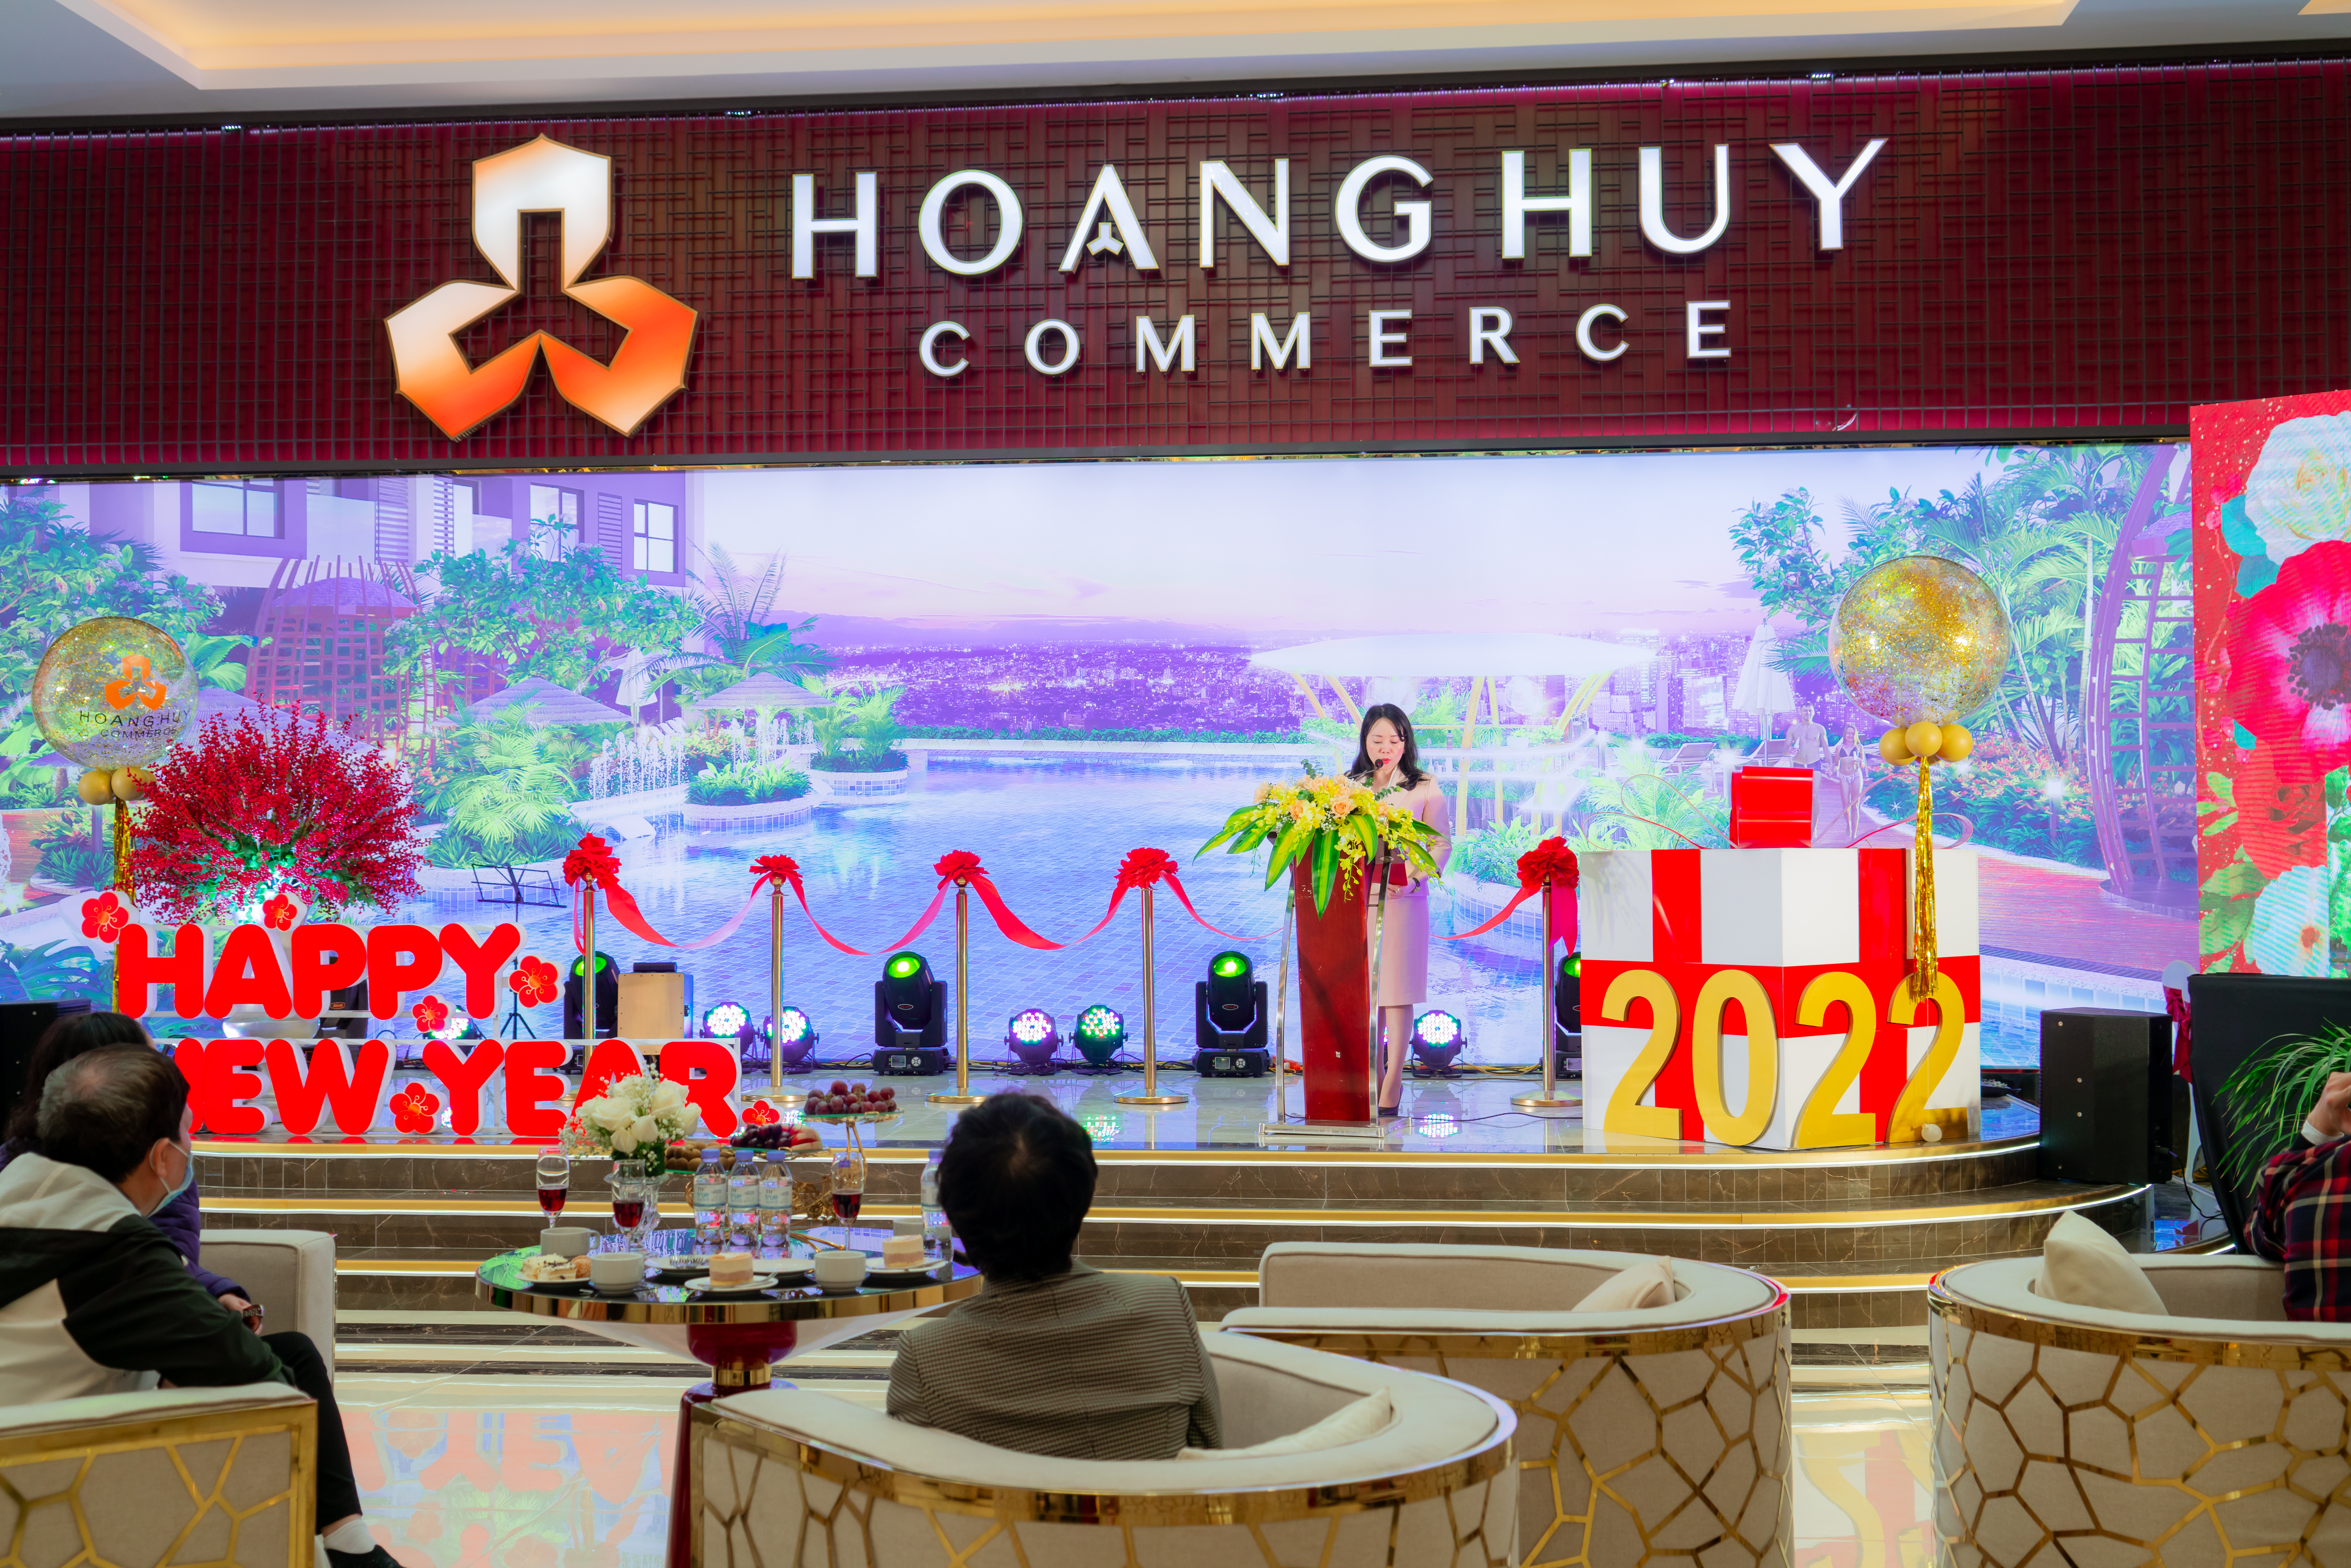 Bà Phạm Thị Thu Huyền – Đại diện Tập đoàn Hoàng Huy phát biểu khai mạc khai trương căn hộ mẫu Hoang Huy Commerce